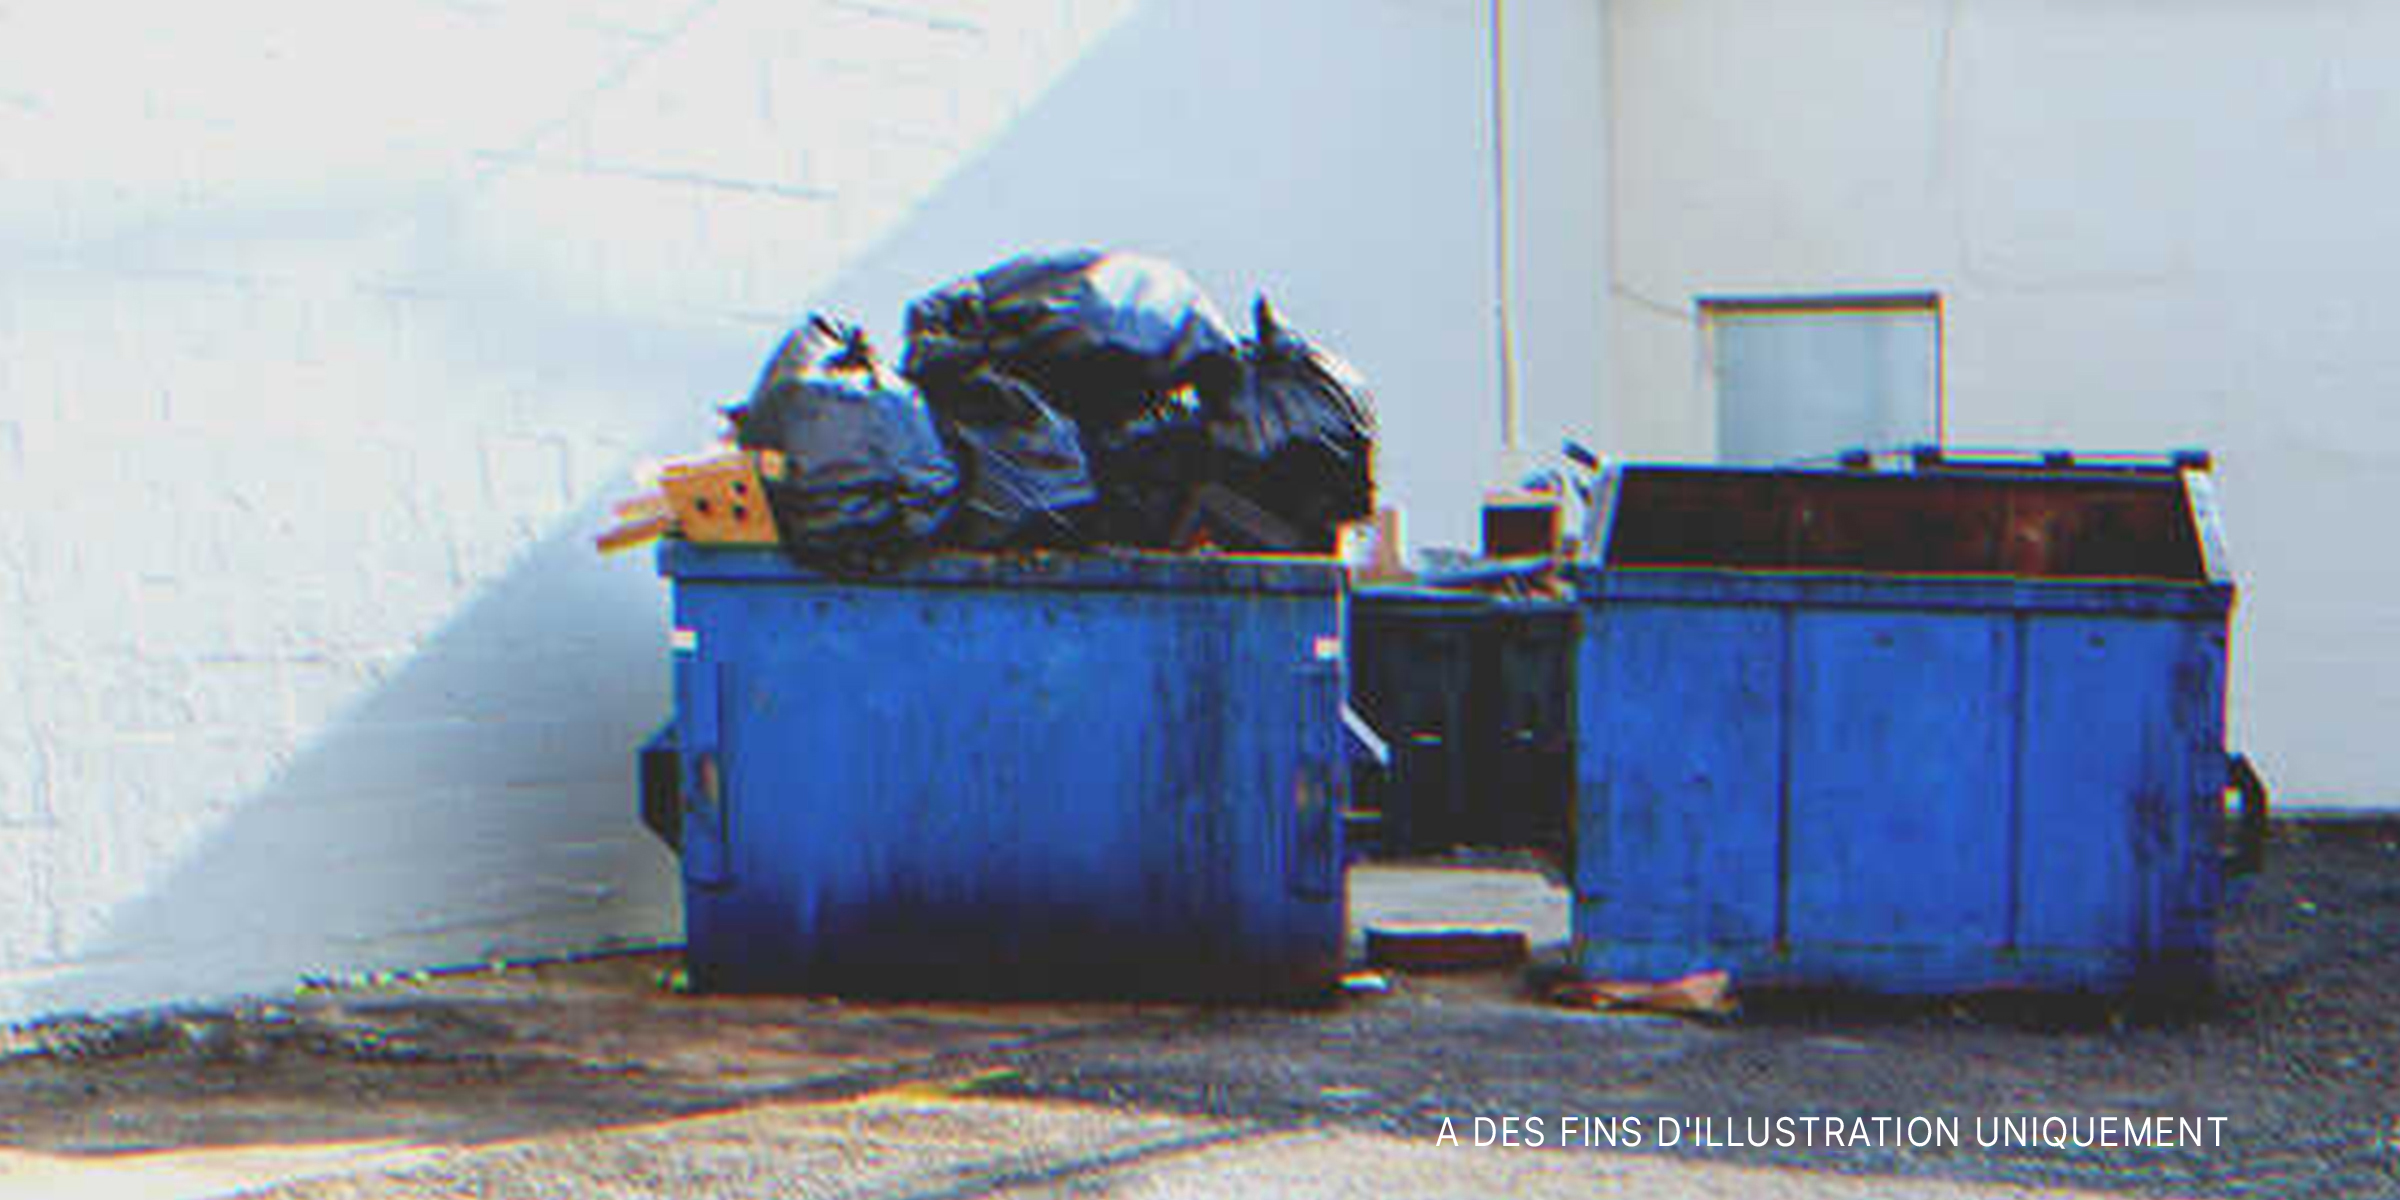 Des bennes à ordures débordant de déchets. | Source : Shutterstock